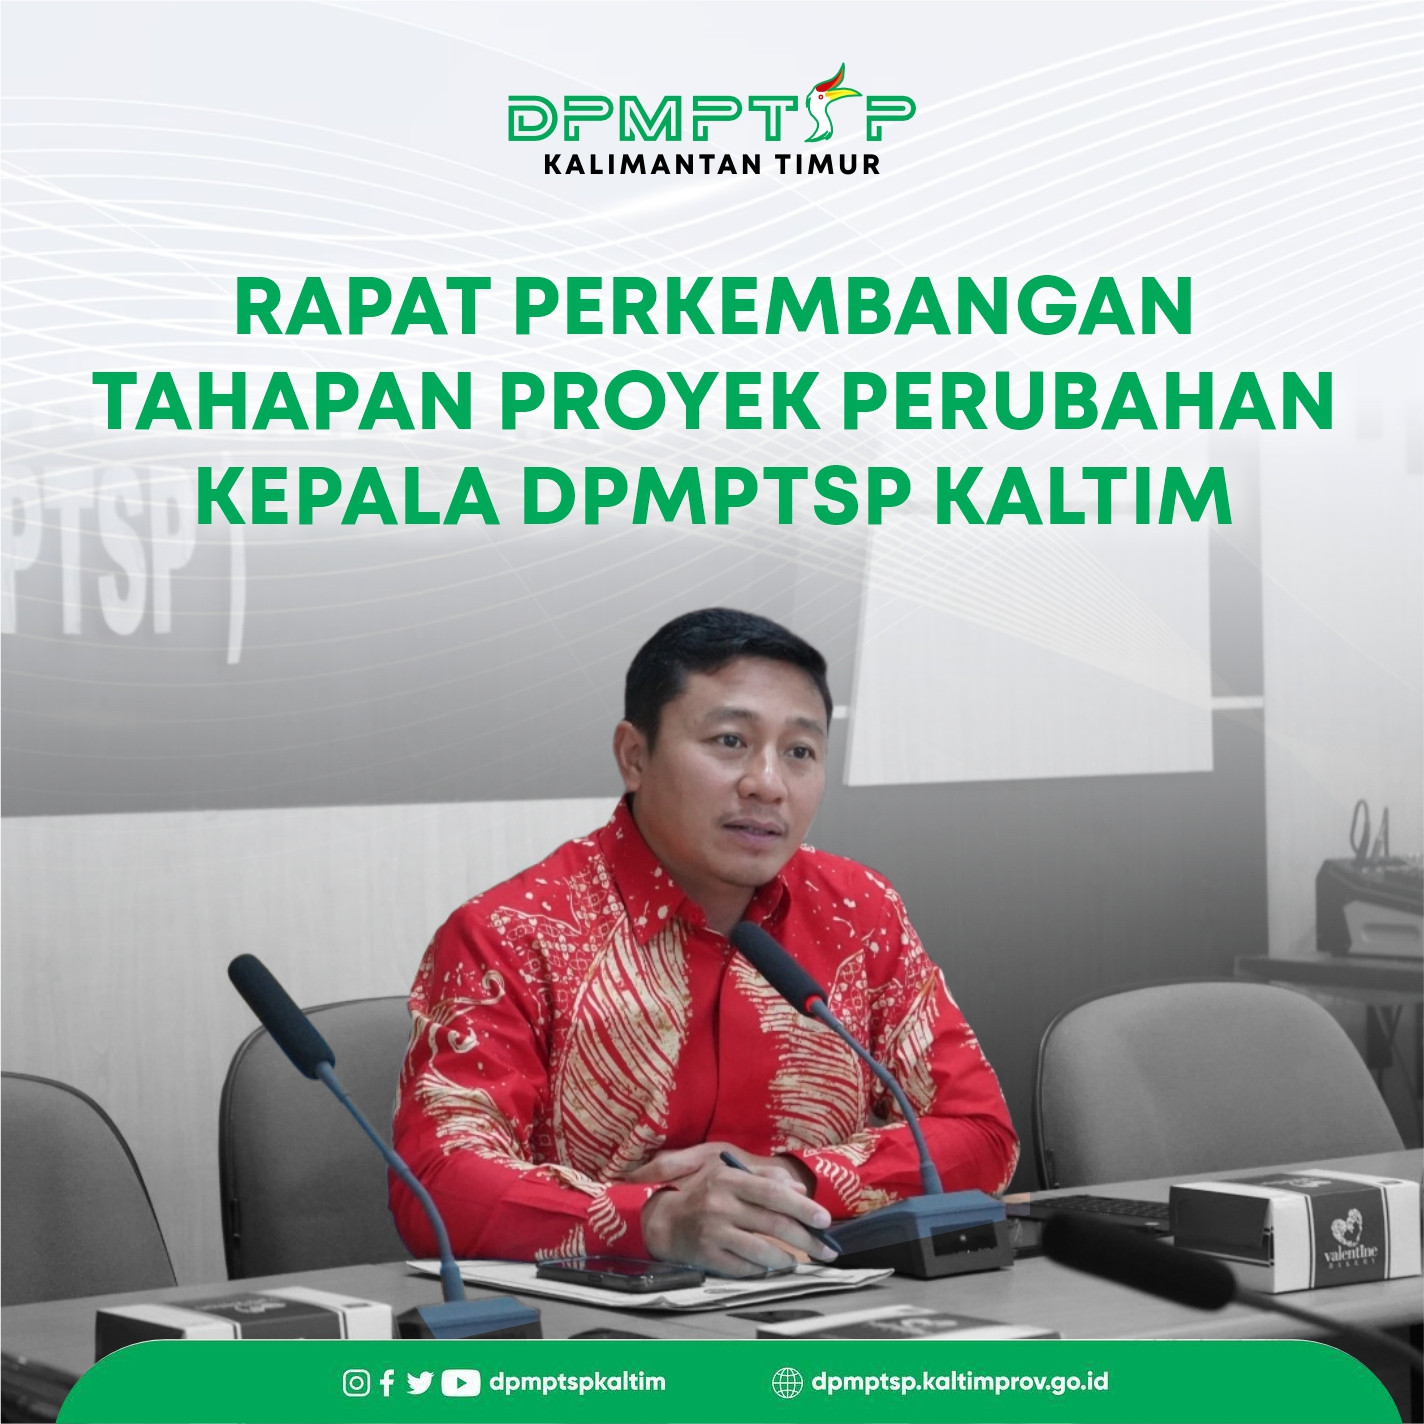 DPMPTSP Kaltim melaksanakan kegiatan Rapat Perkembangan Tahapan Proyek Perubahan Kepala DPMPTSP Kaltim.